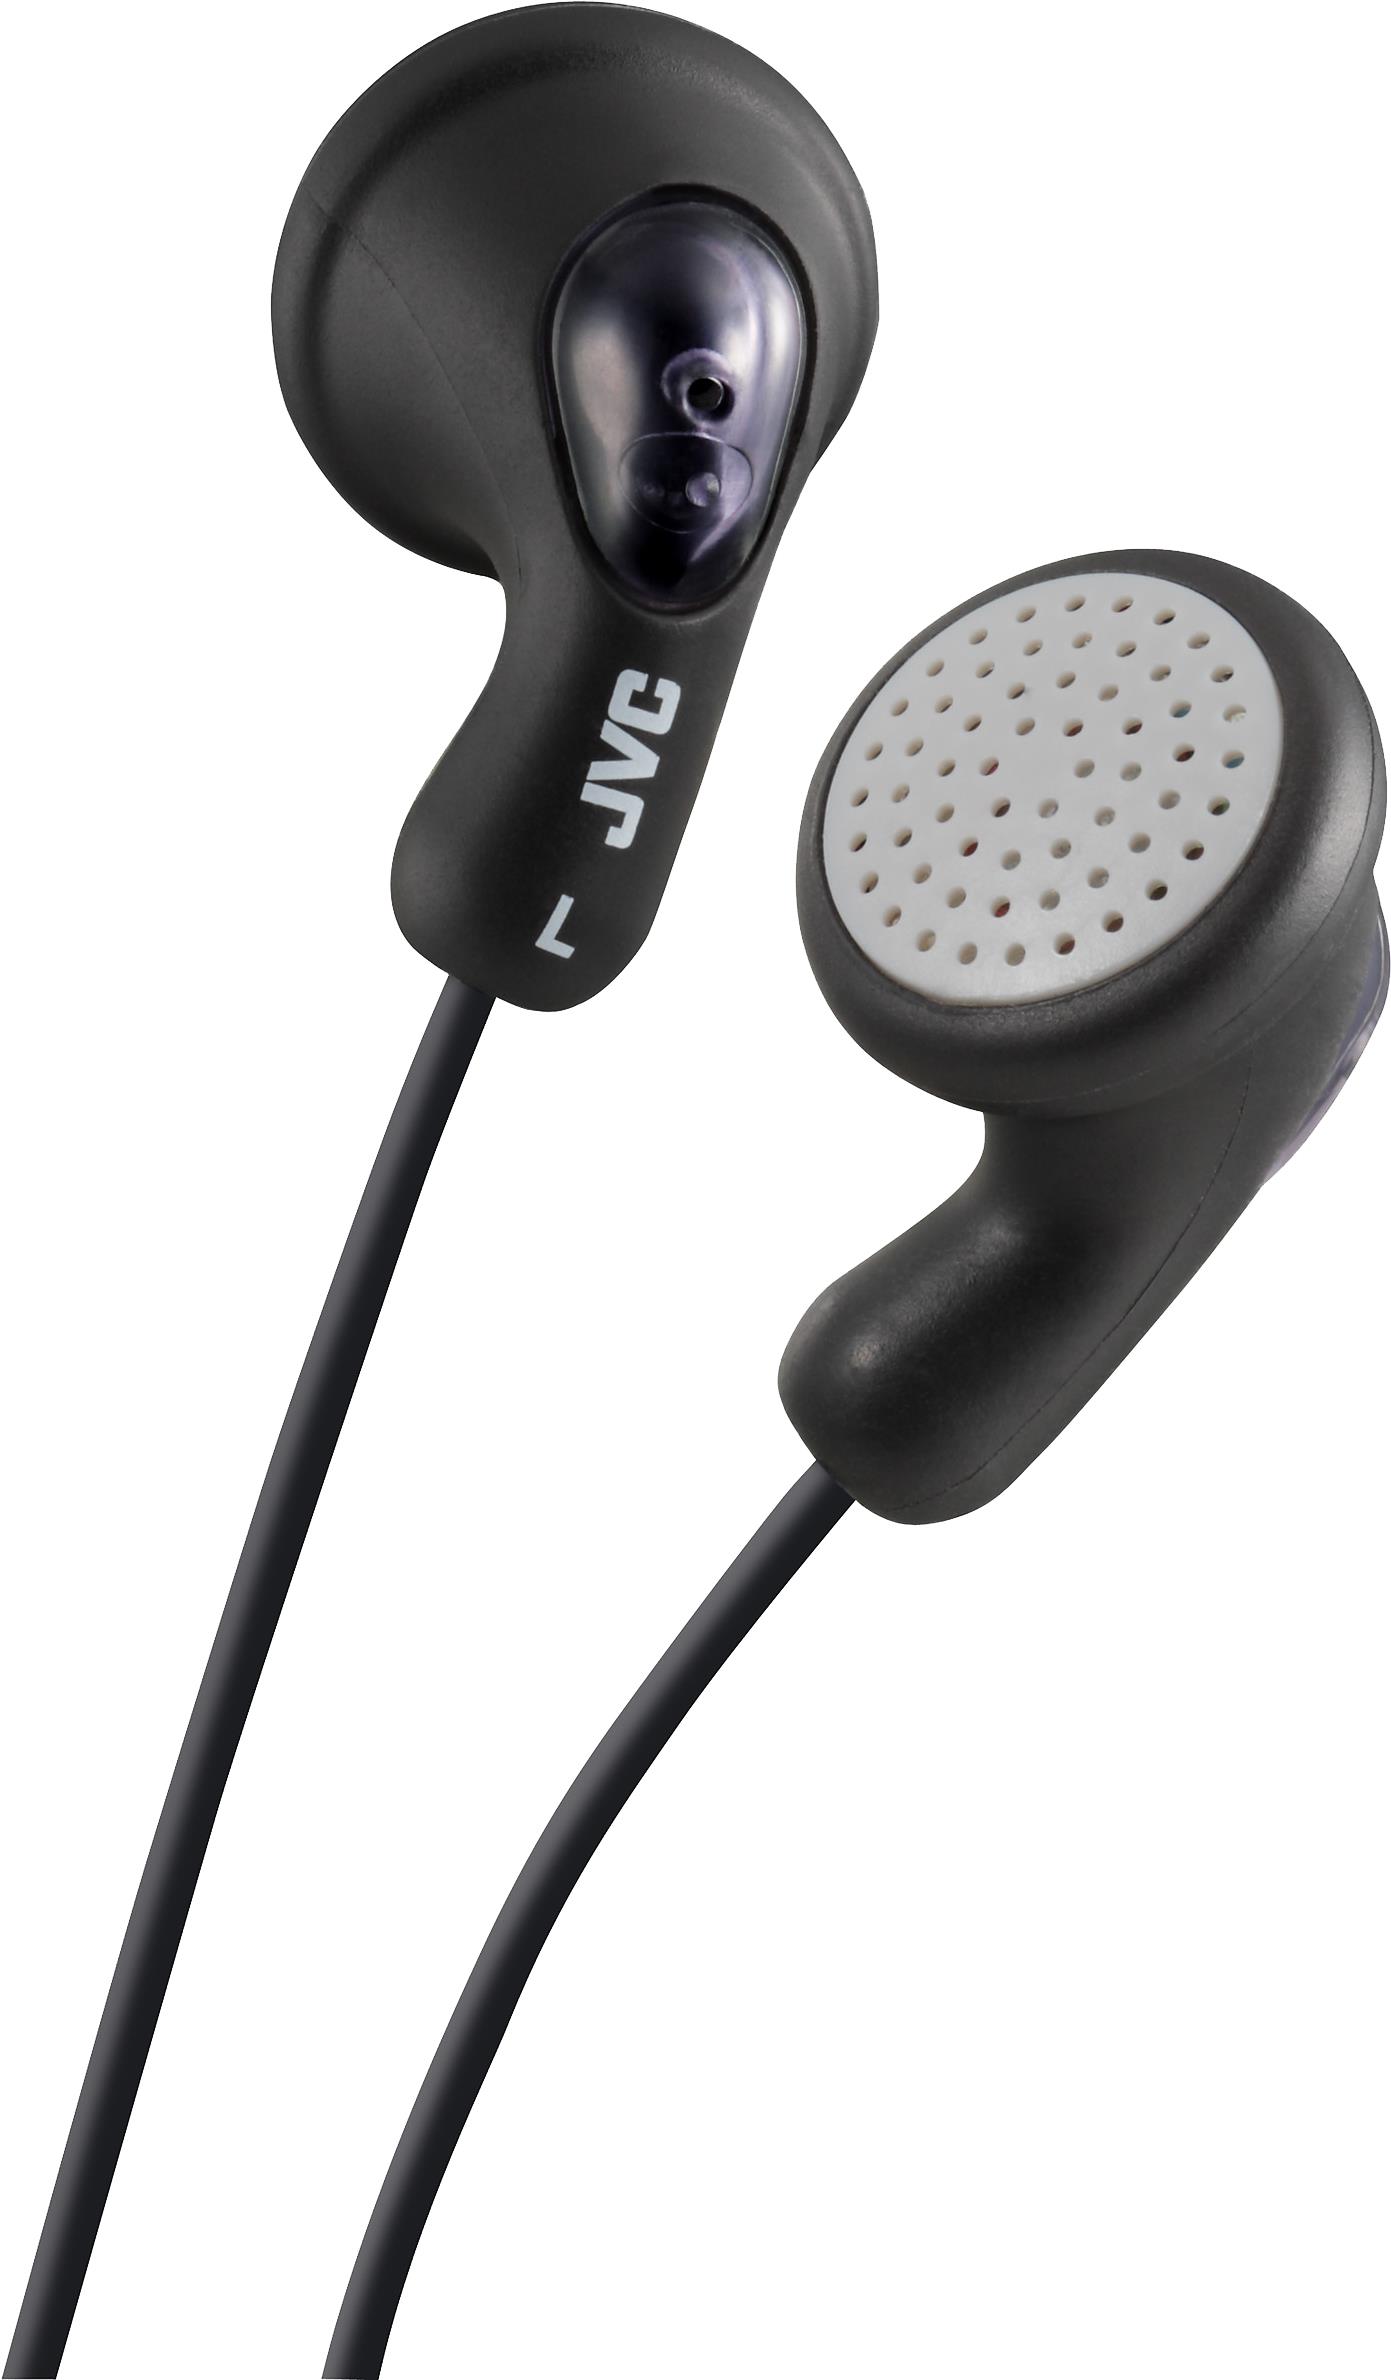 JVC HA-F14. Produkttyp: Kopfhörer. Übertragungstechnik: Kabelgebunden. Empfohlene Nutzung: Musik. Kopfhörerfrequenz: 16 - 20000 Hz. Kabellänge: 1 m. Gewicht: 17,1 g. Produktfarbe: Schwarz (HA-F14-BN-U)